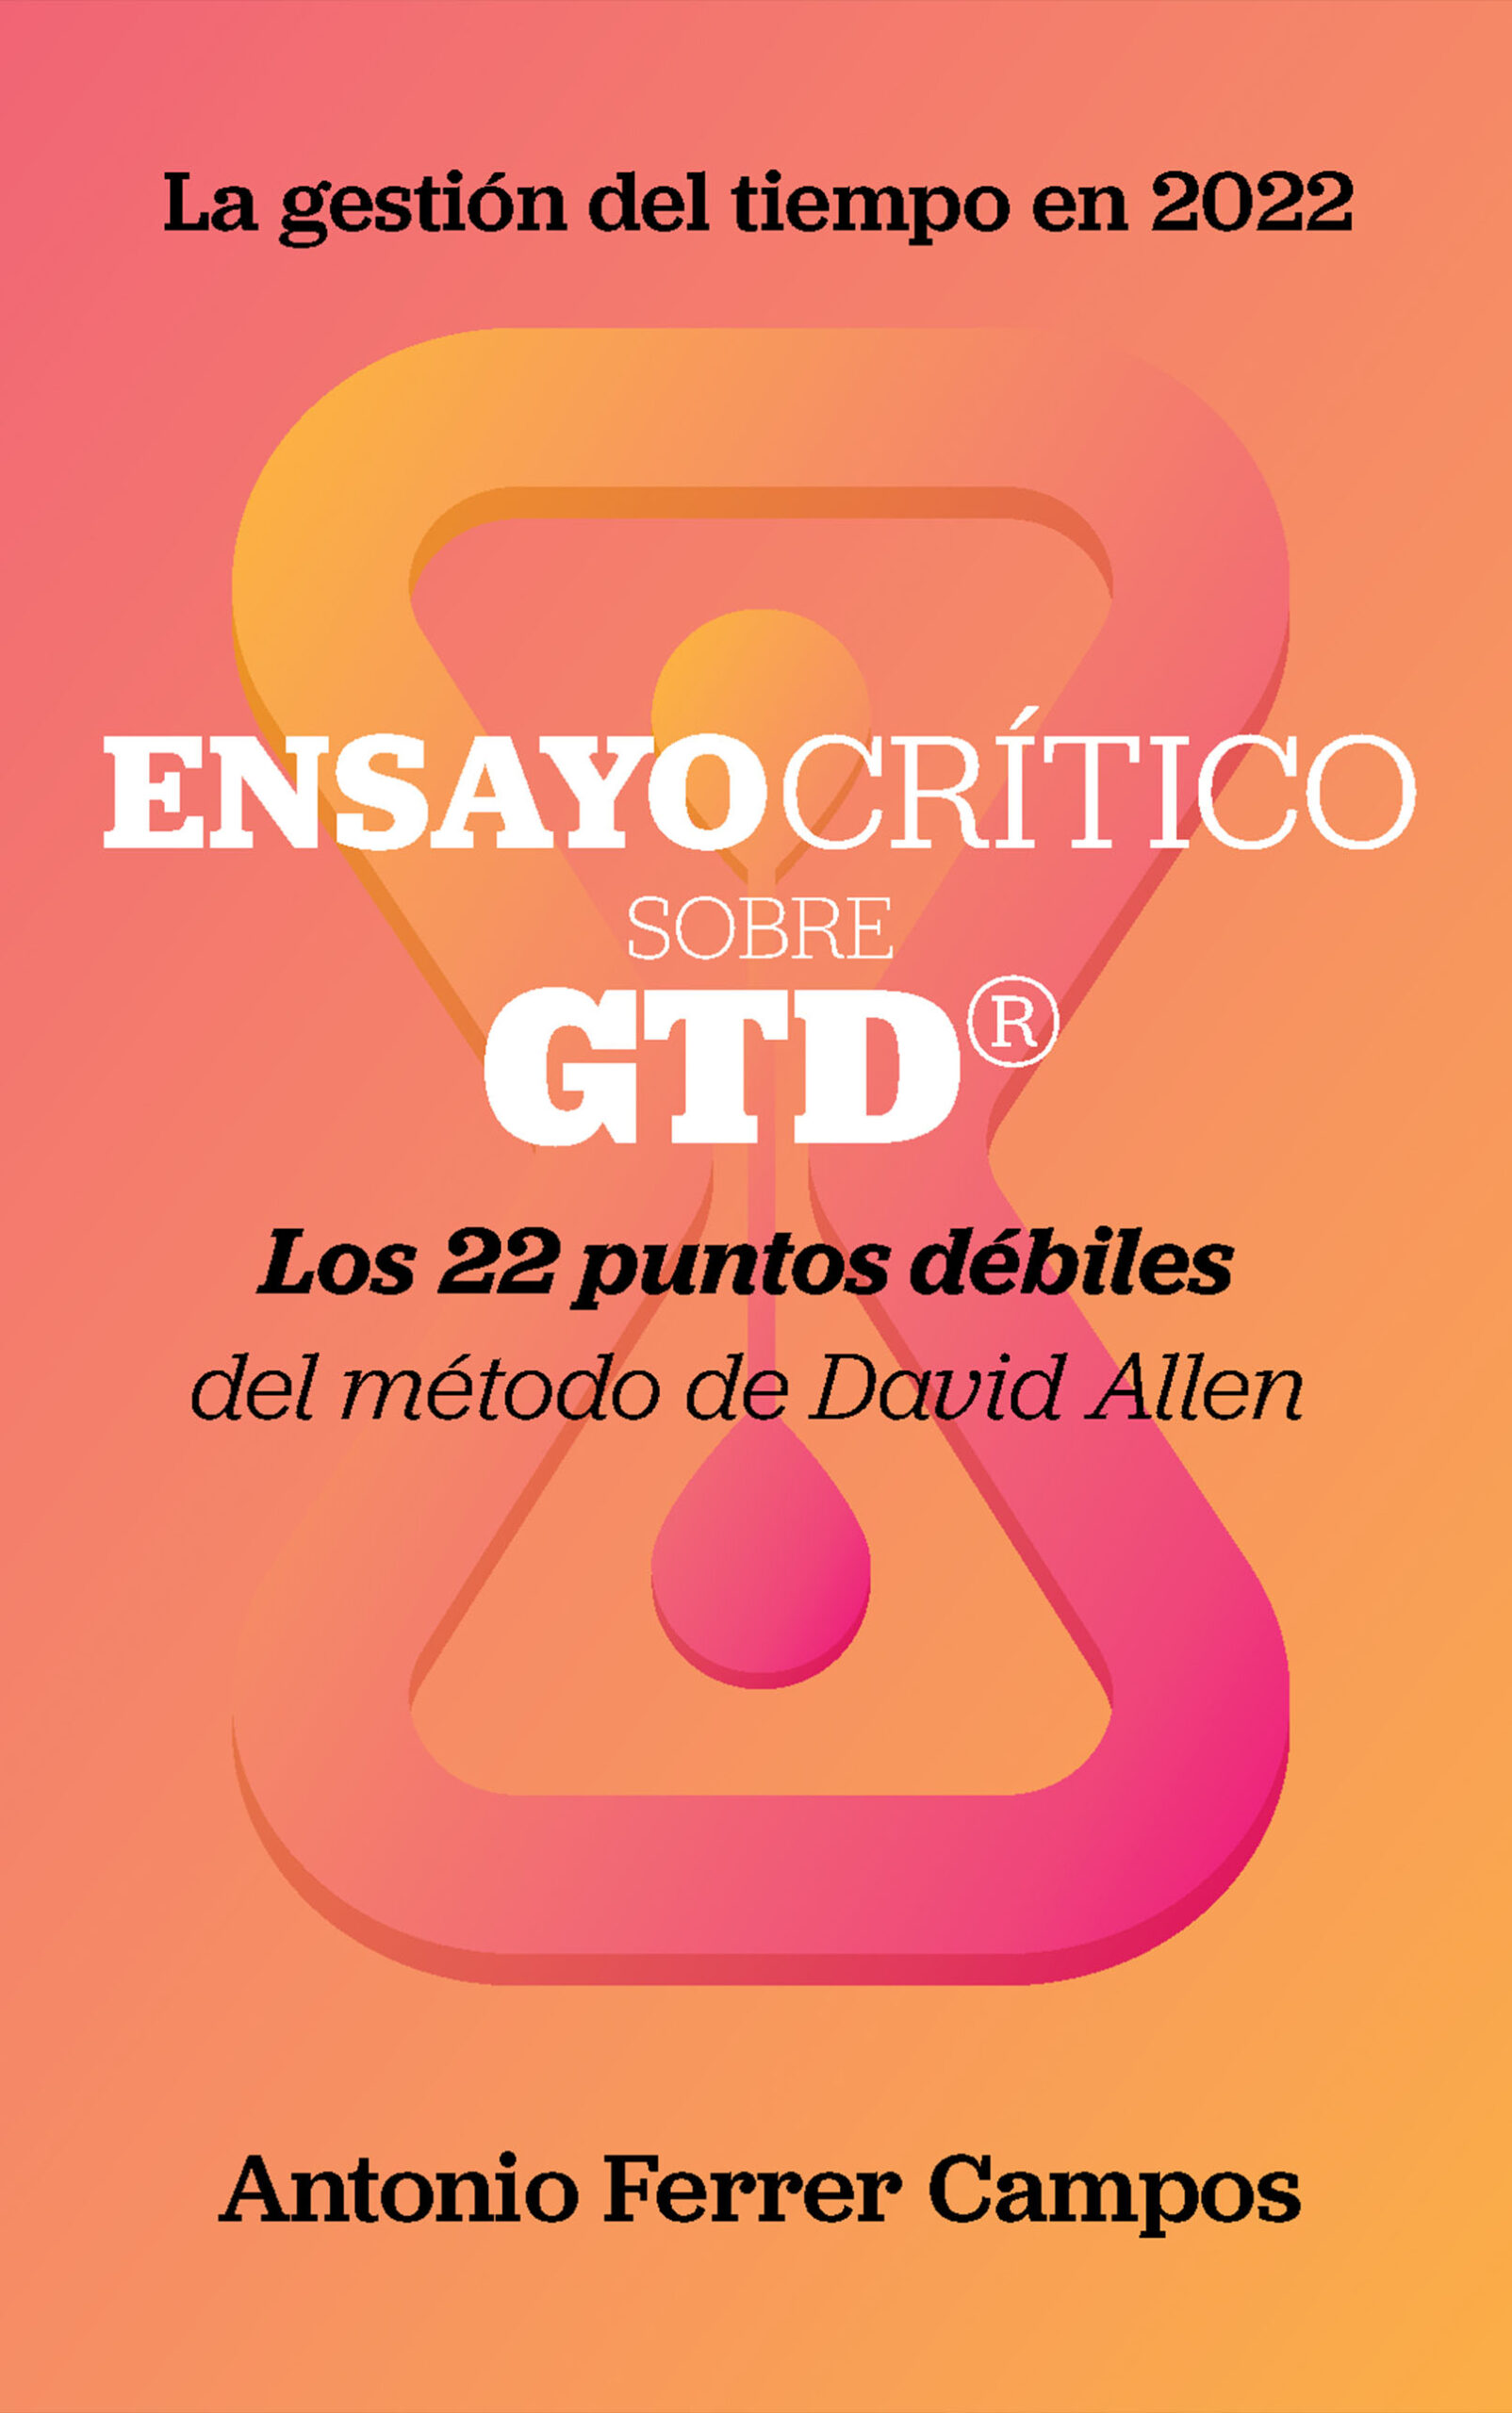 Ensayo crítico sobre GTD®, de Antonio Ferrer